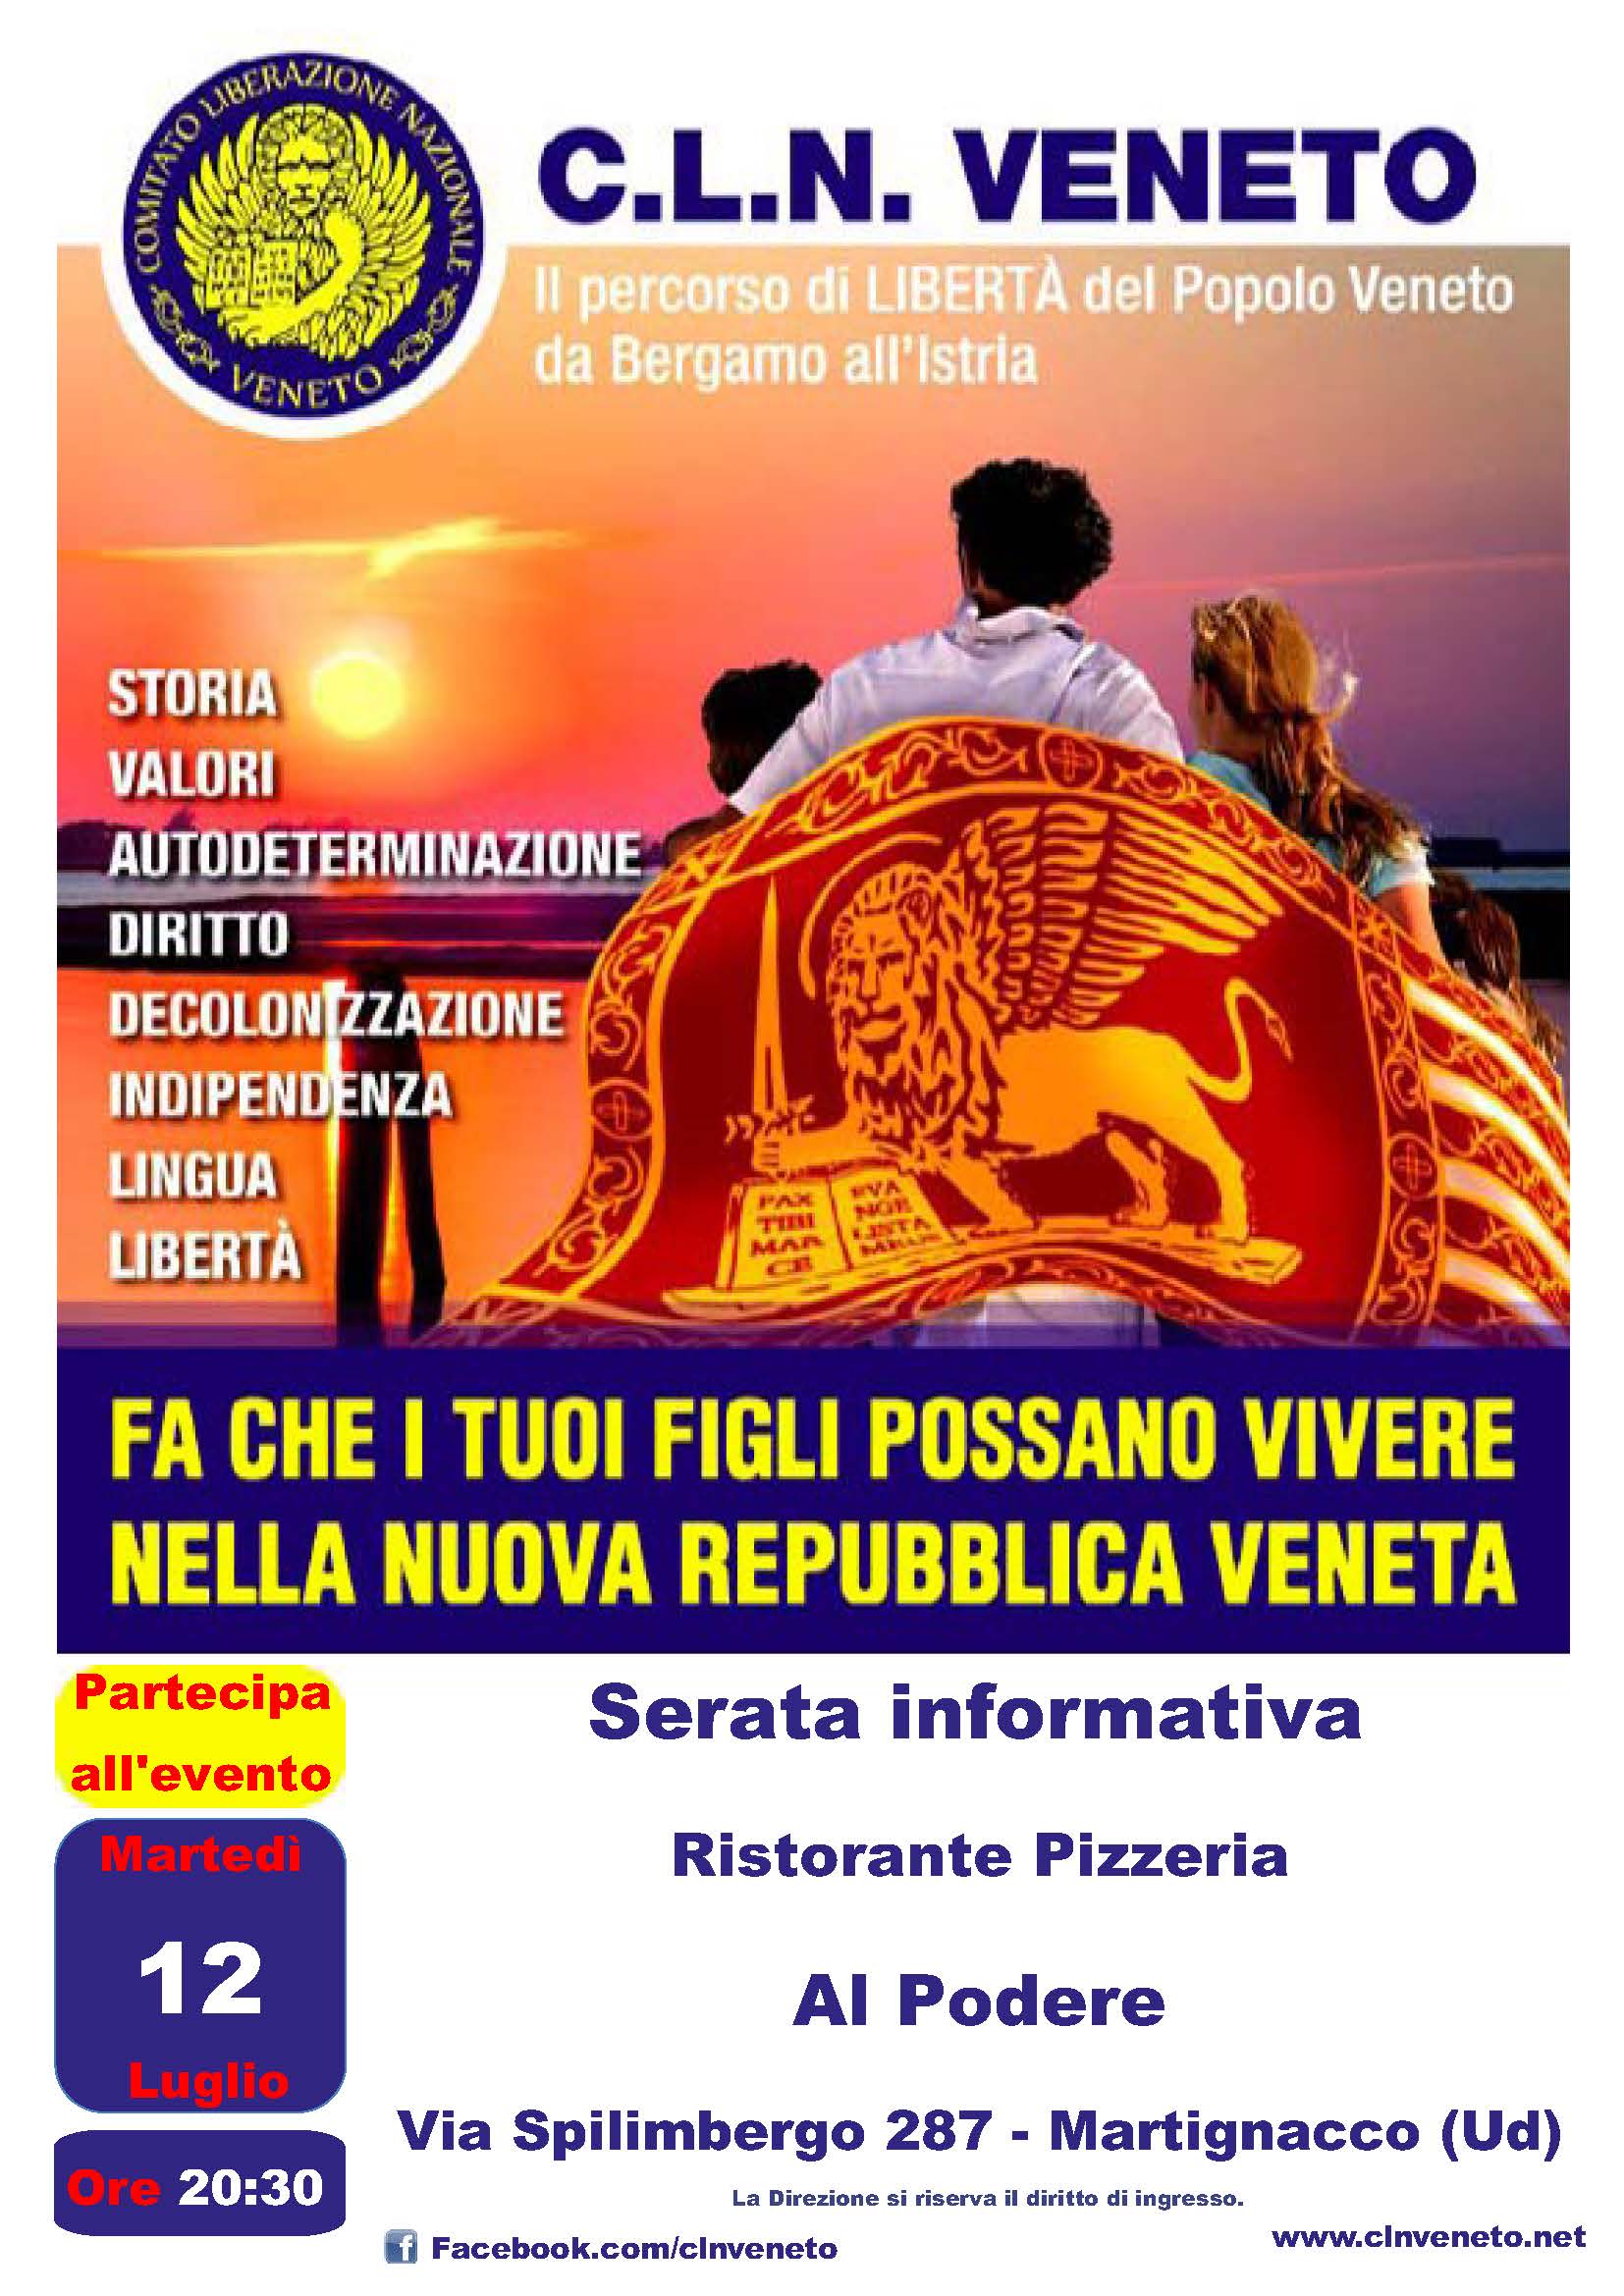 Martignacco-Ud-12-07-2022 @ Ristorante Pizzeria Al Podere